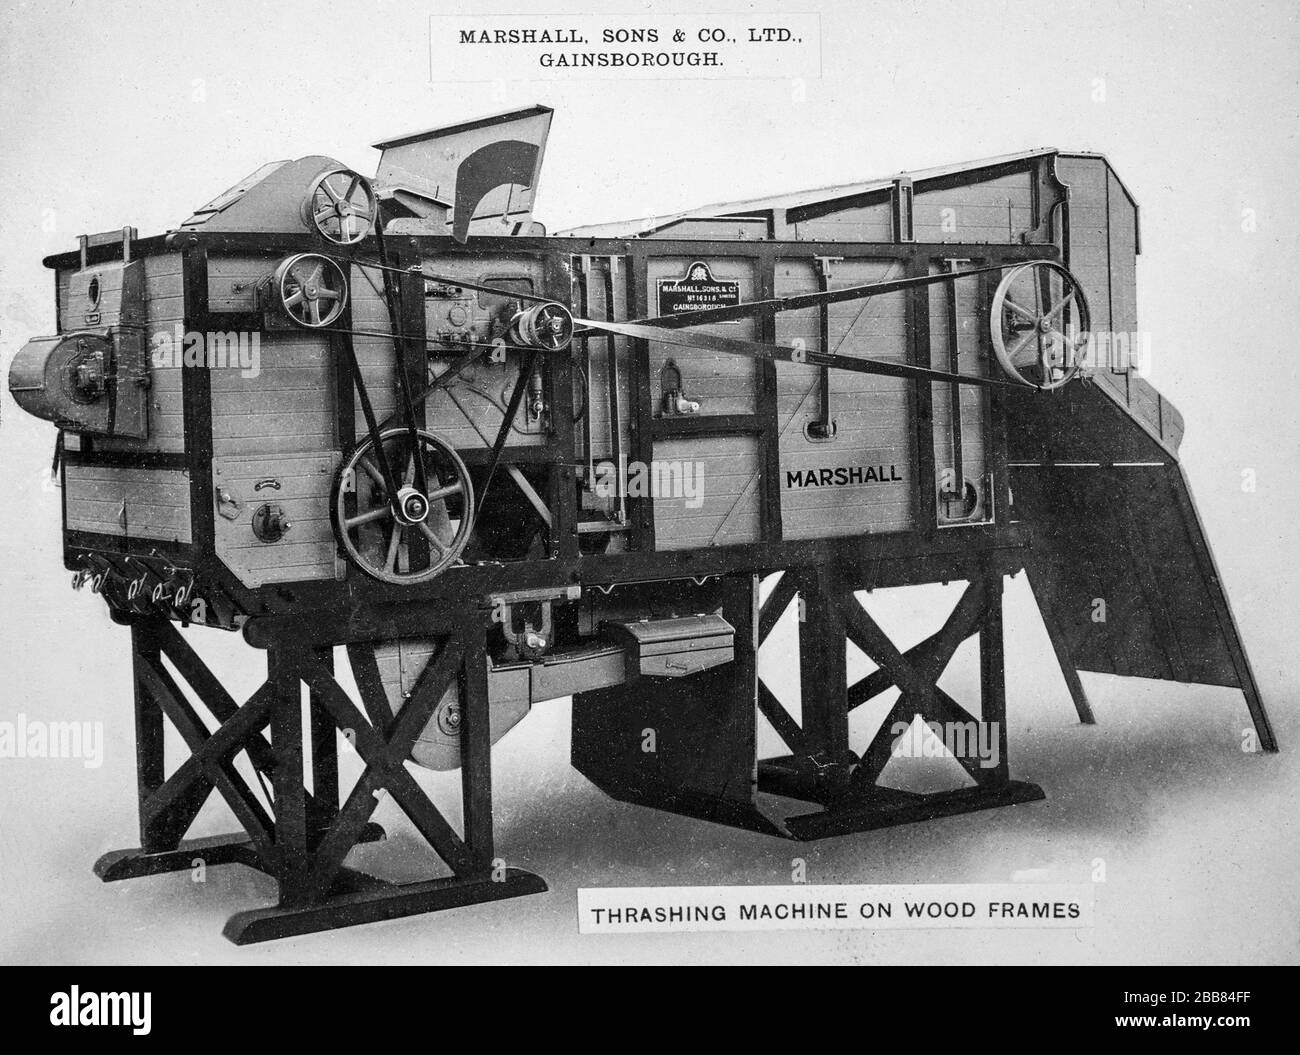 Vintage Schwarz-Weiß-Foto. Vintage Farm Machinery. Eine Thrashing-Maschine auf Holzrahmen, produziert von Marshall, Sons and Co. Of Gainsborough, England. Stockfoto